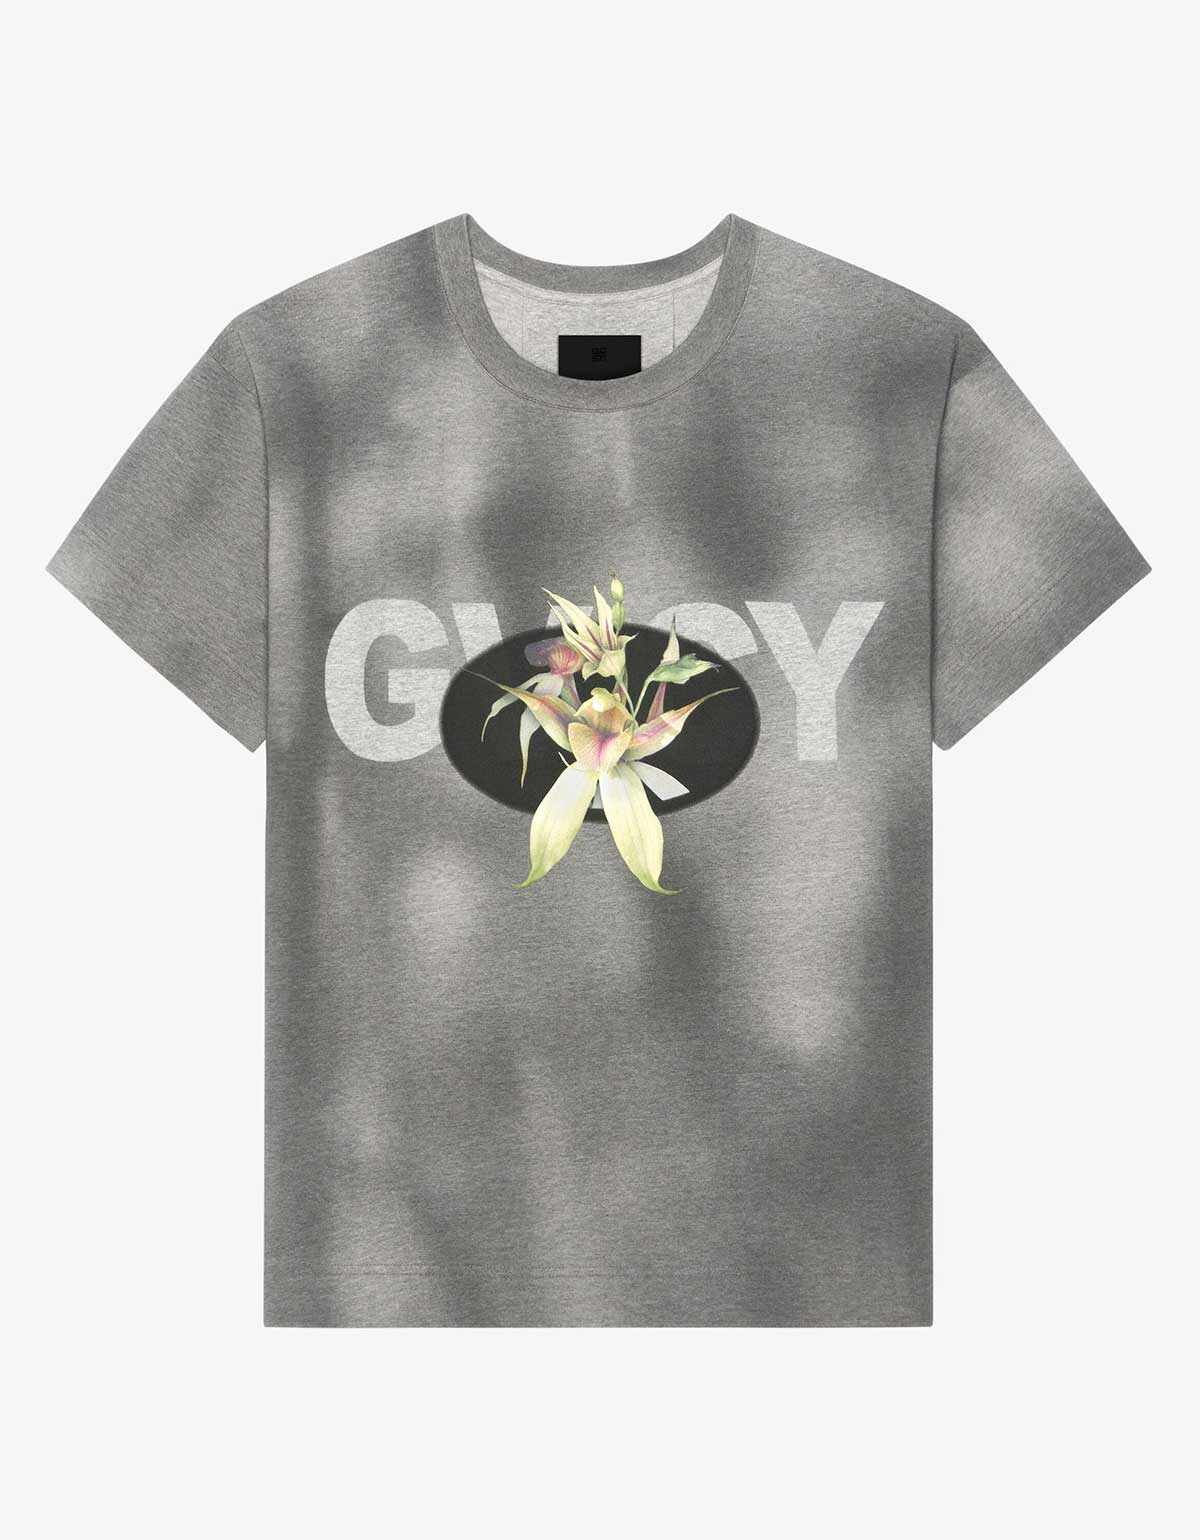 Givenchy Black GVCY Flower Print T-Shirt